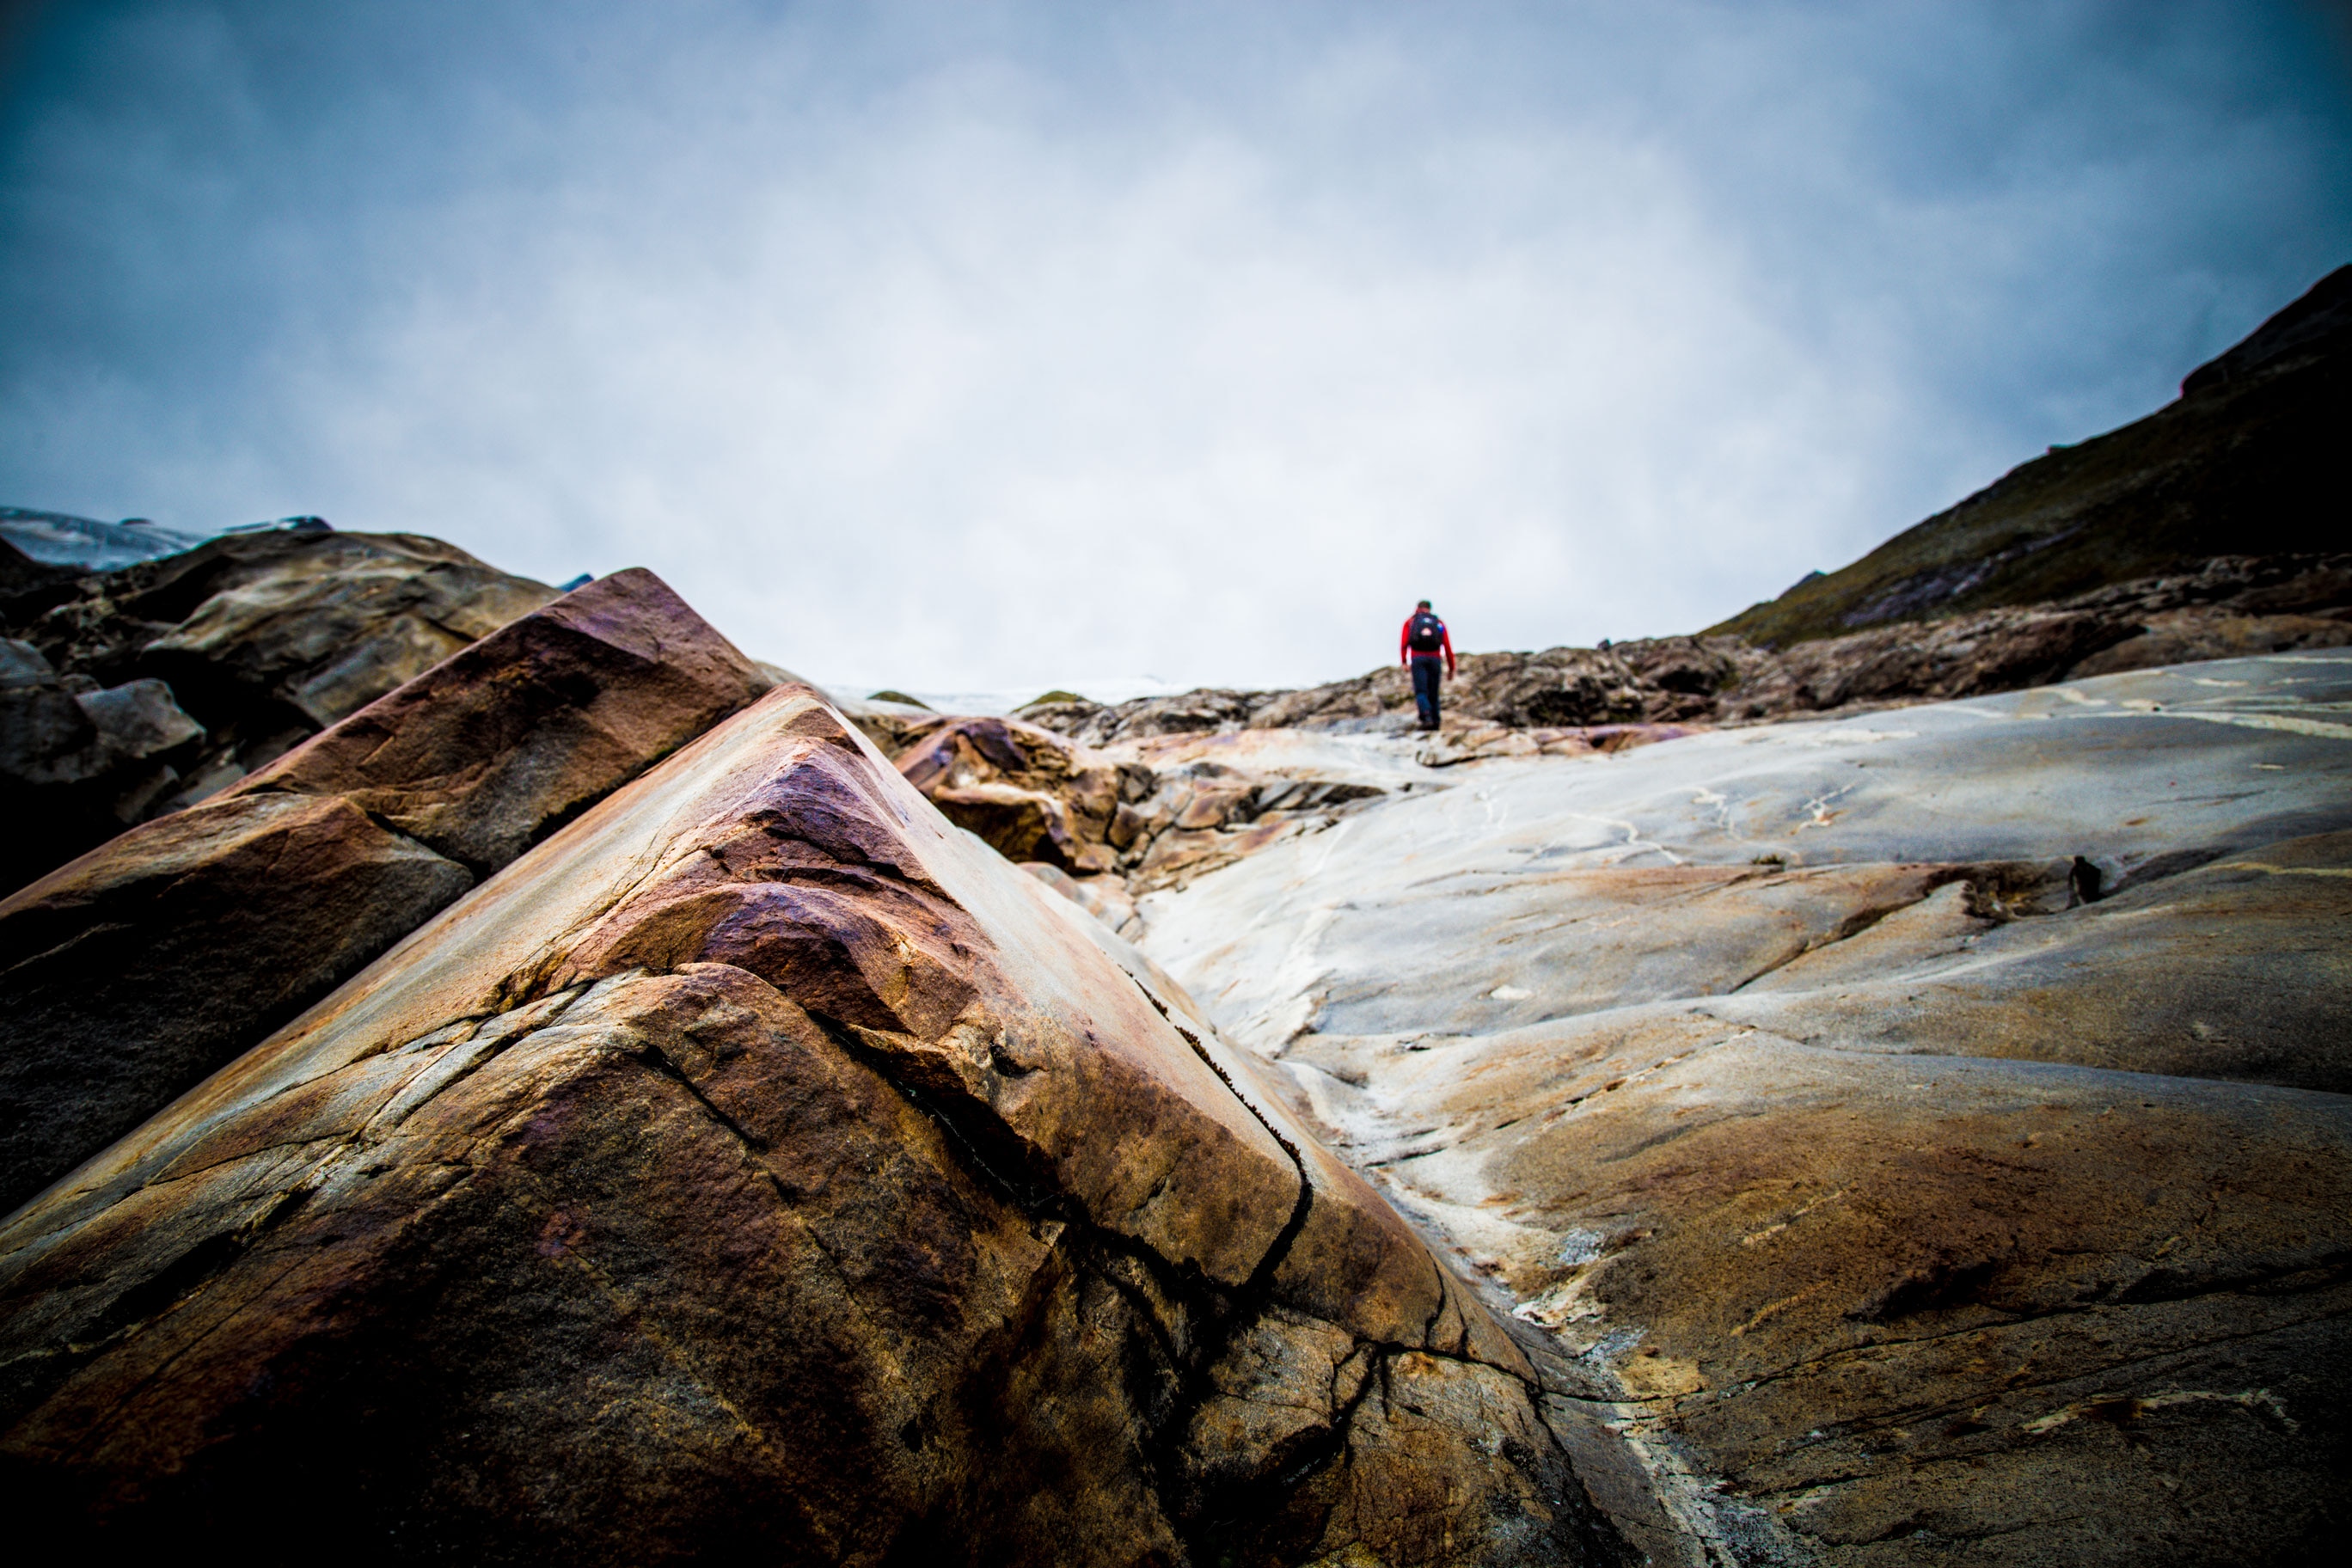 Vorbei an dem beeindruckenden Gletschertor führt der Weg über Felsenplatten in den verschiedensten Farbtönen zum höchsten Punkt